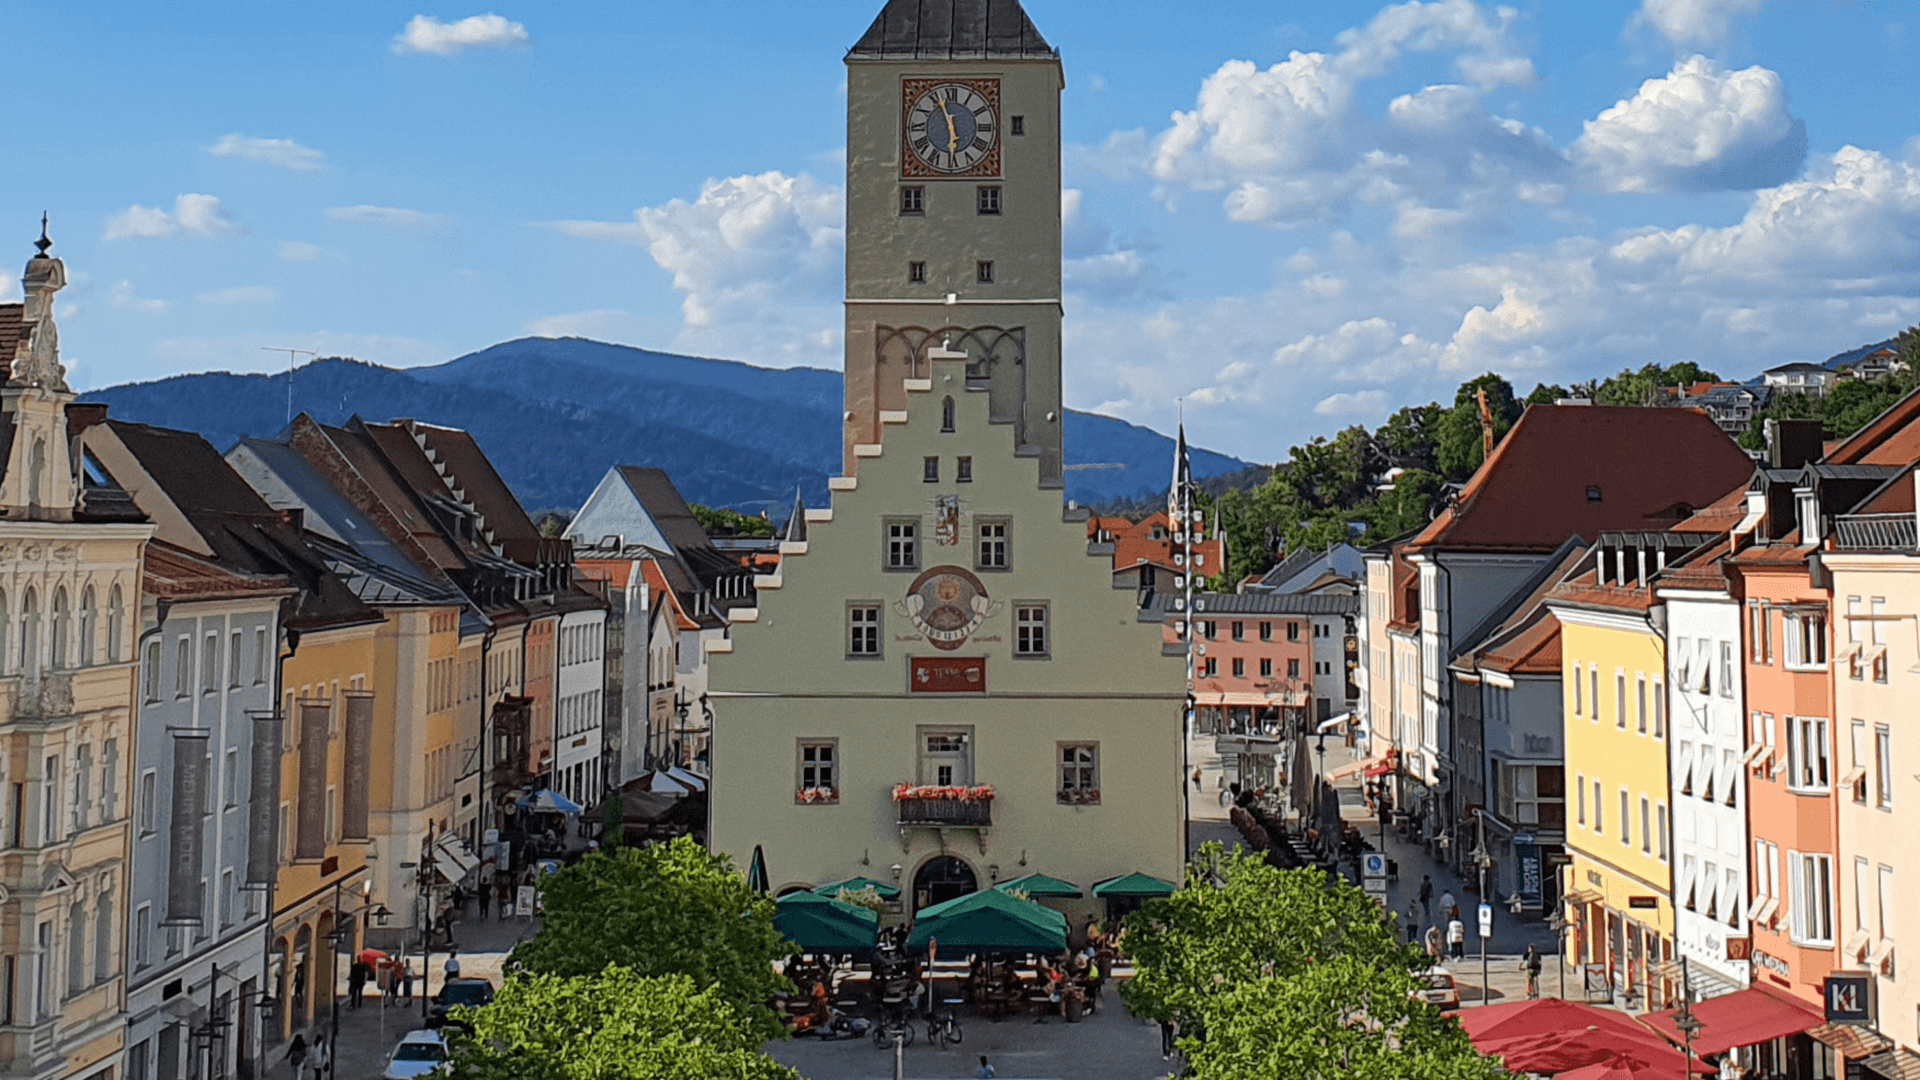 Deggendorf, eine Stadt in Niederbayern, zeichnet sich durch ihre historische Bedeutung aus und war im späten Mittelalter eine Hauptstadt der bayerischen Teilherzogtümer. Heute ist sie als Mittelstadt ein wichtiger Verwaltungssitz in der Region.